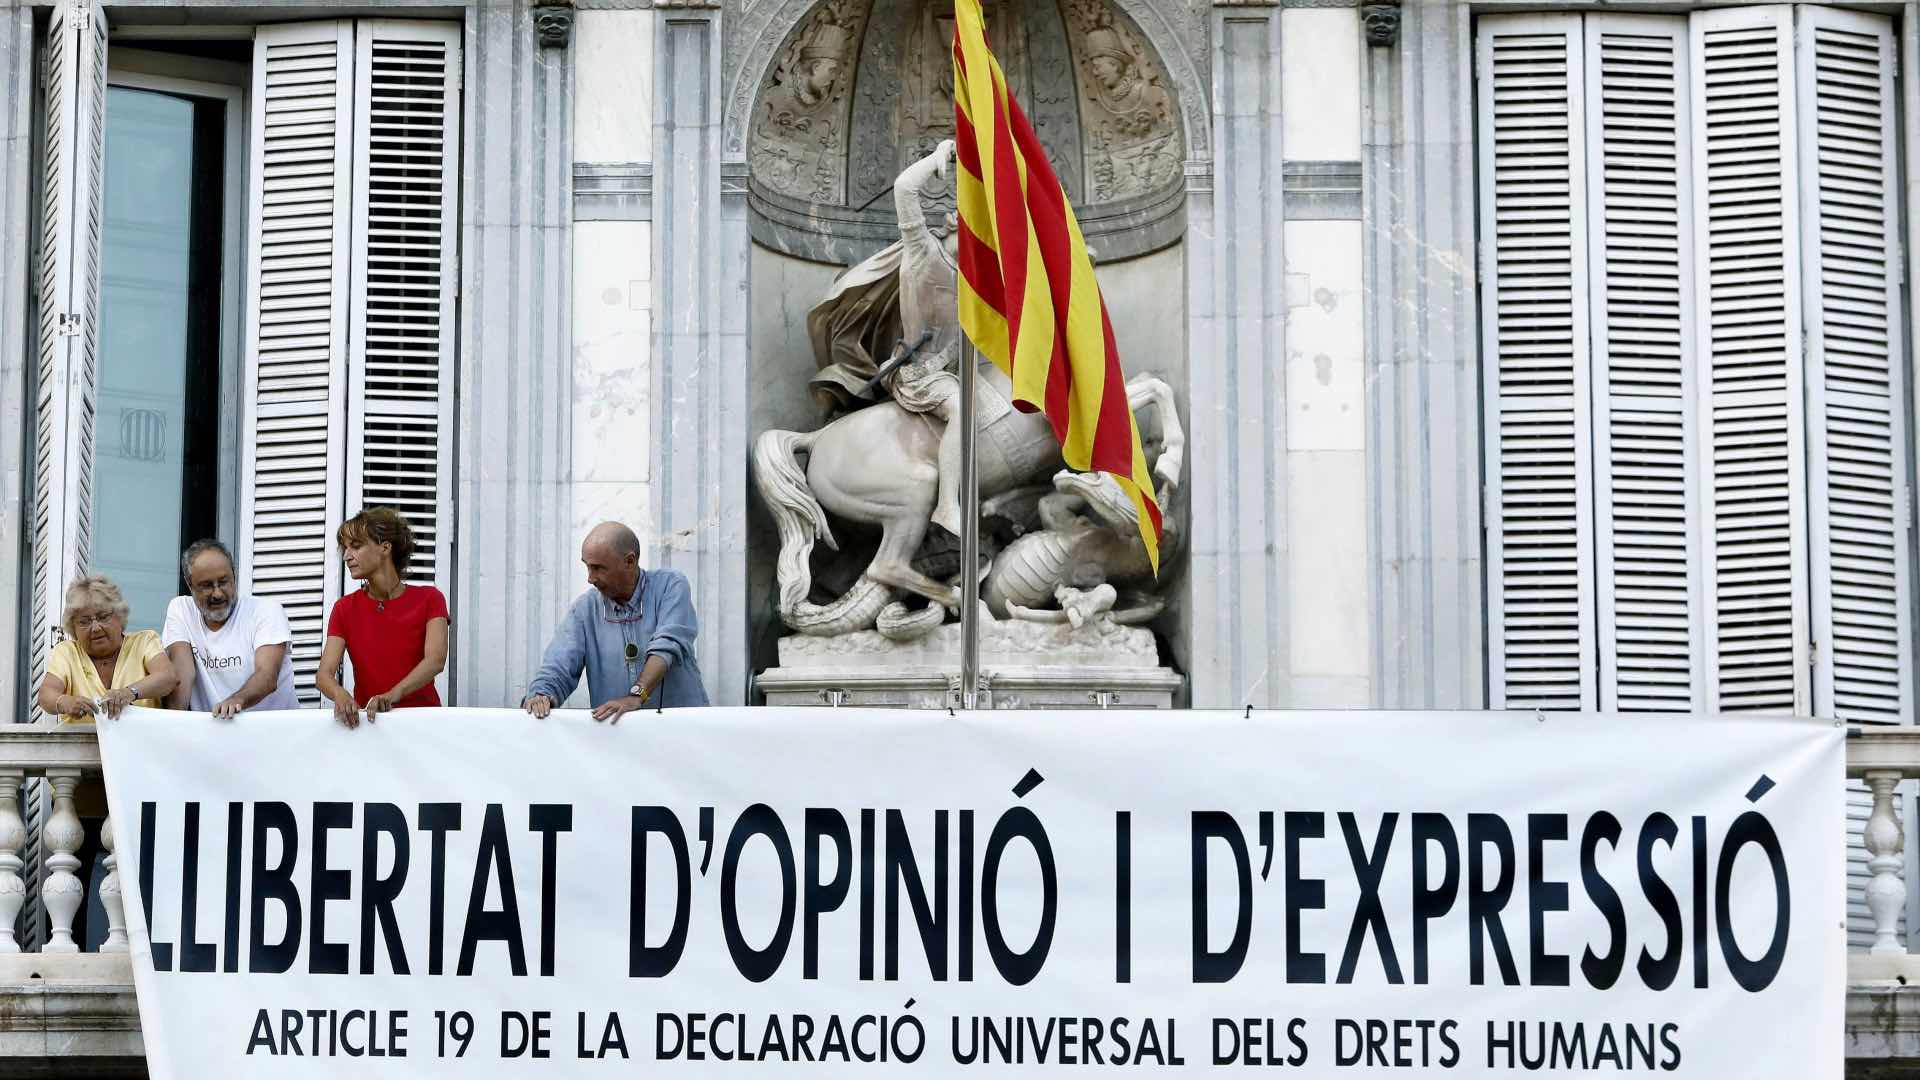 Despliegan en la Generalitat otra pancarta tras retirar la de los presos por orden judicial